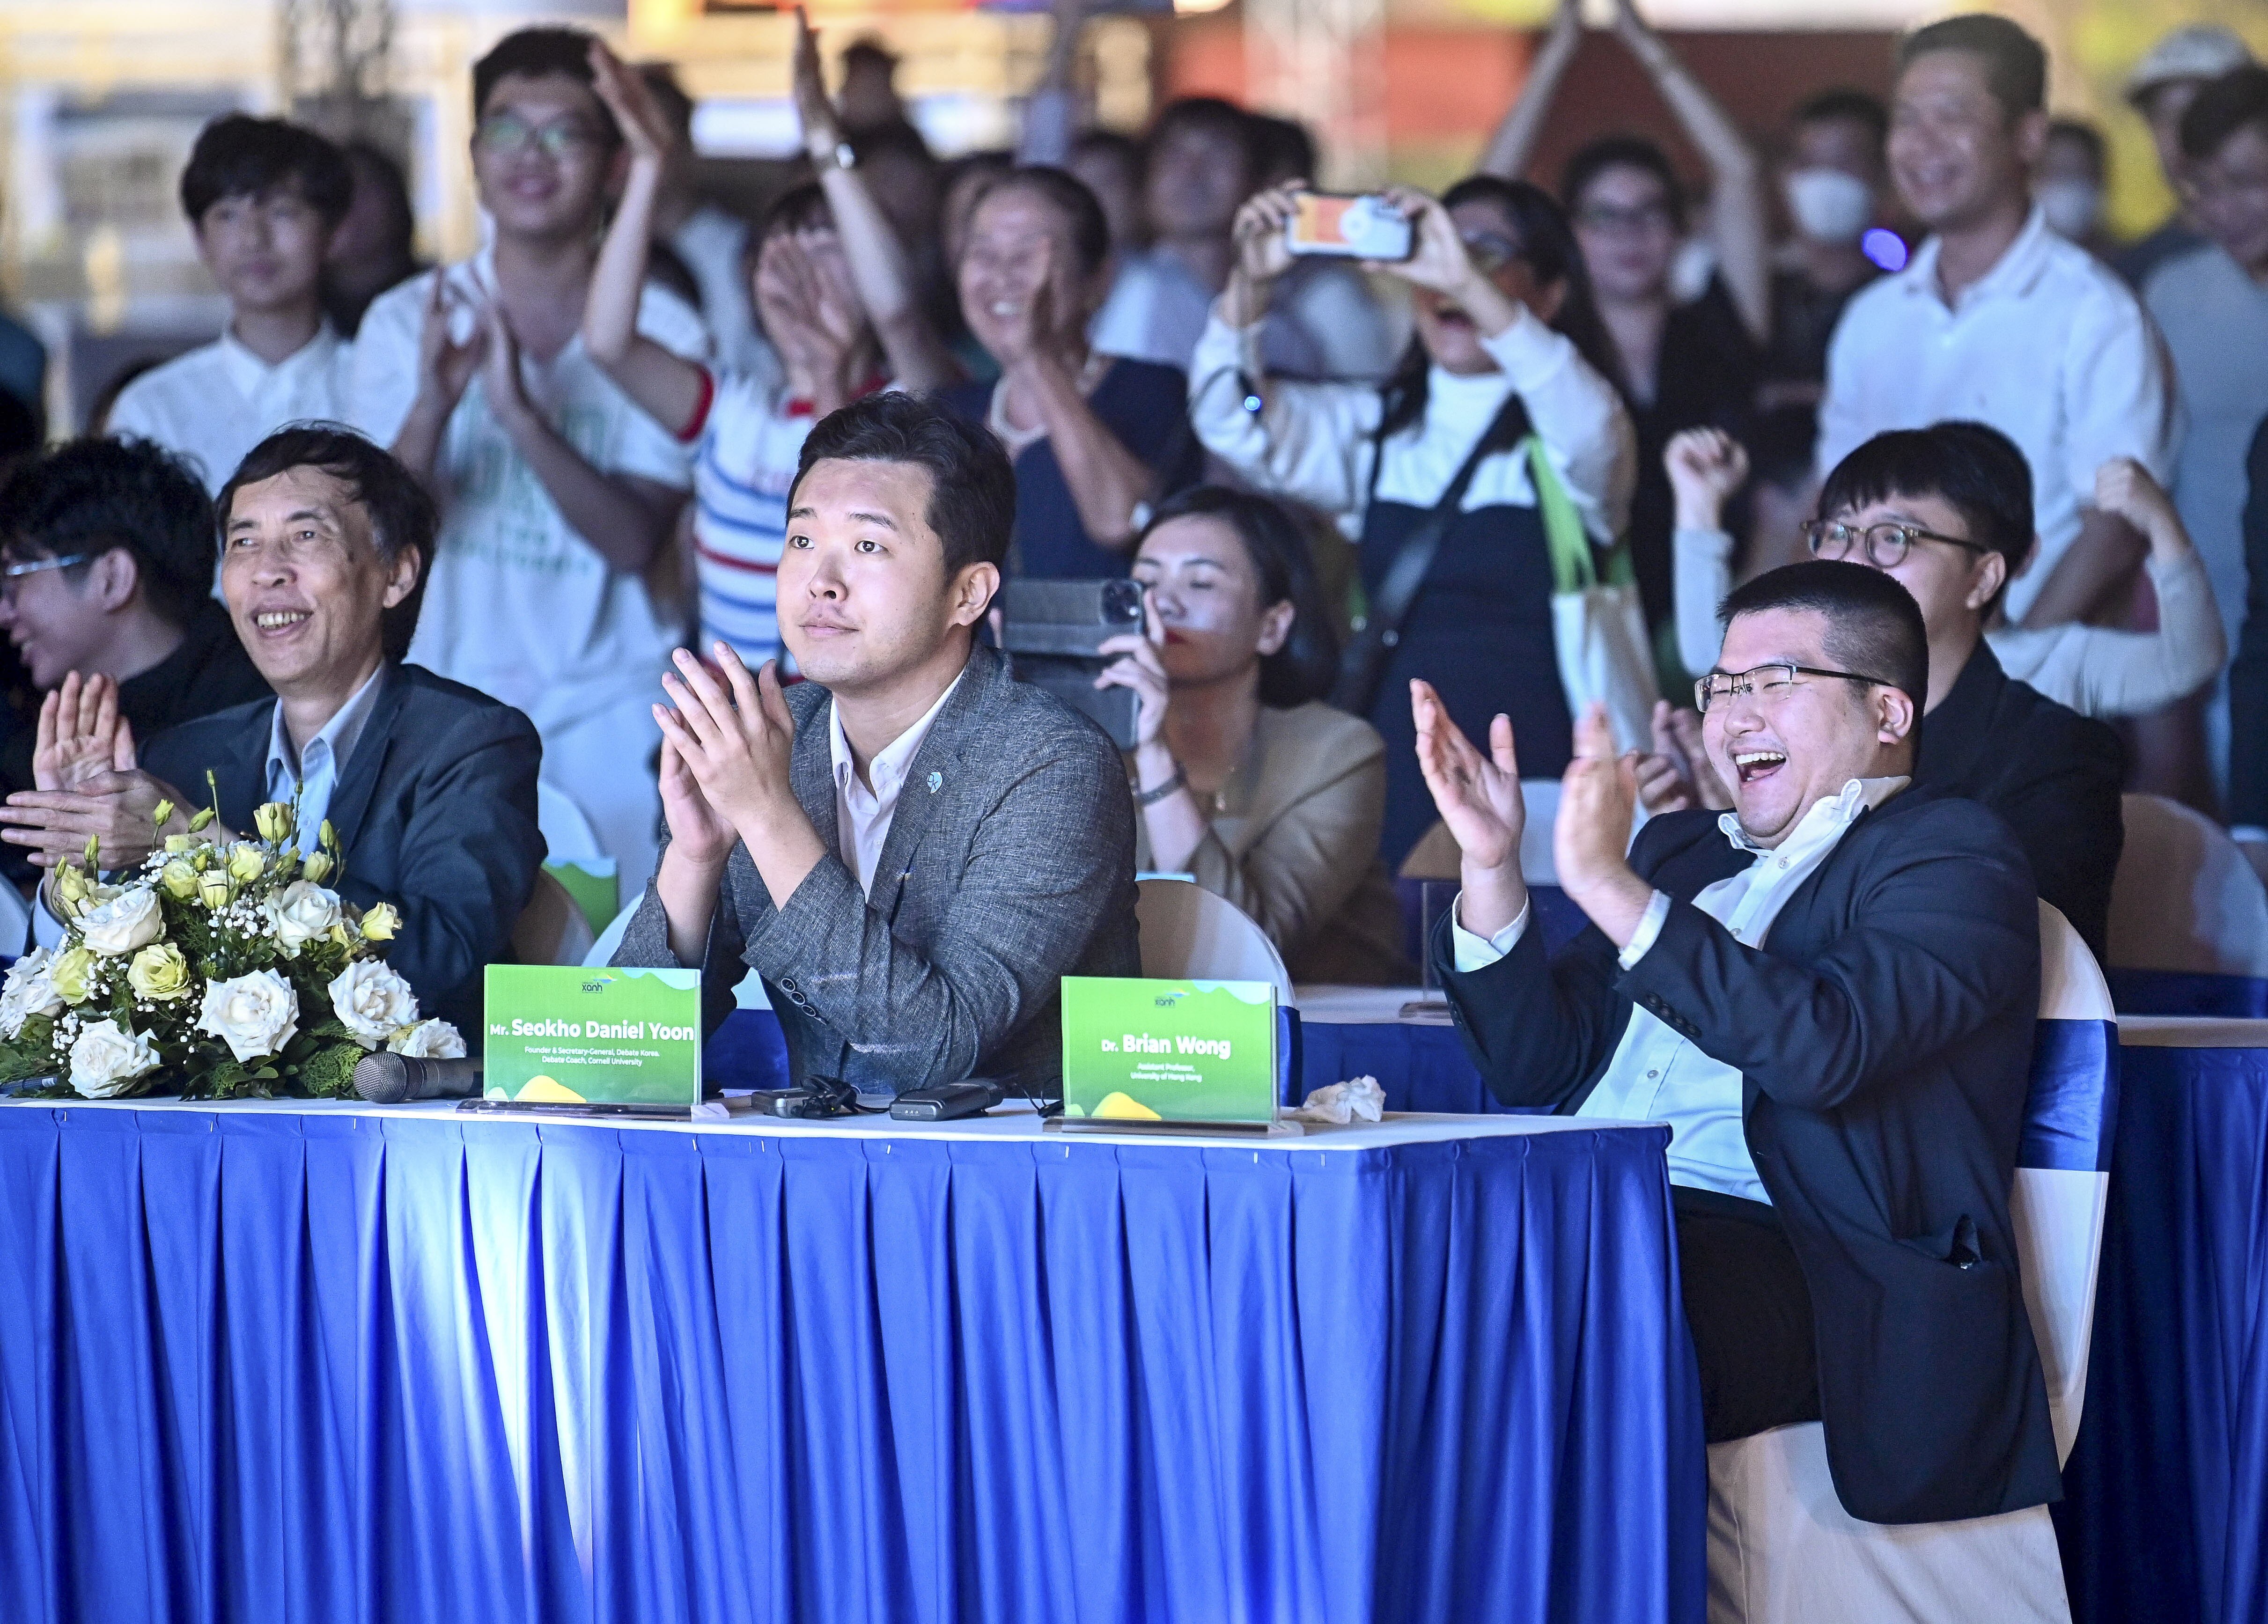 Tiến sĩ Brian Wong và các thành viên Hội đồng Giám khảo vui mừng trước chiến thắng thuyết phục của các đội thi.